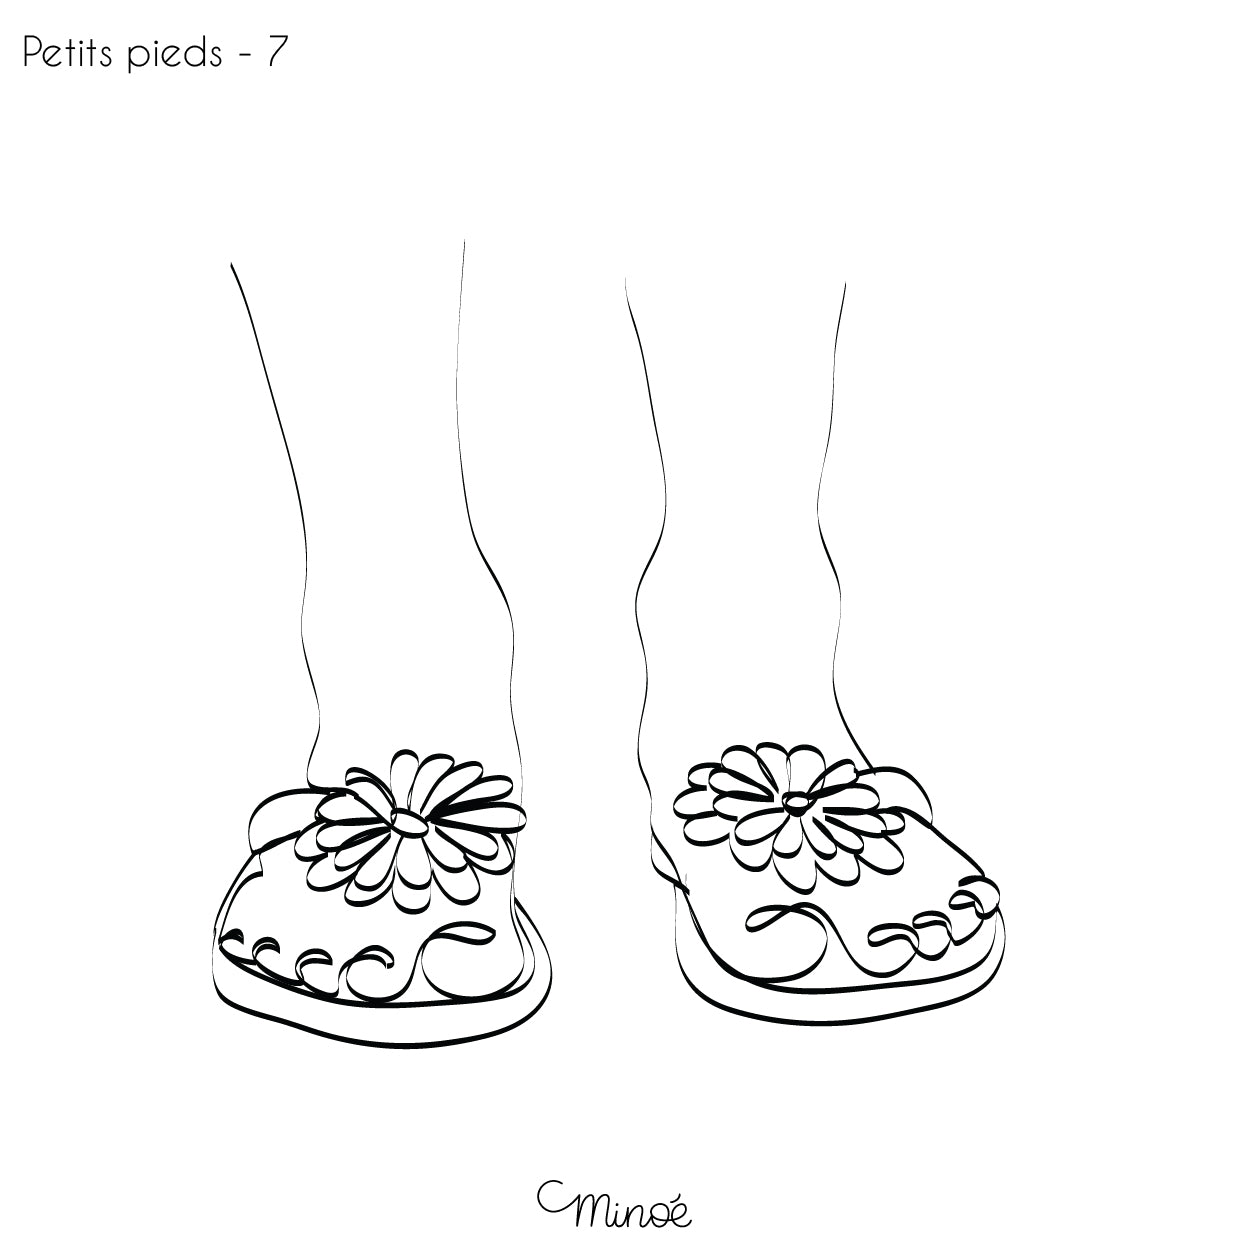 Chouette maman et petits pieds : illustration et bagagerie